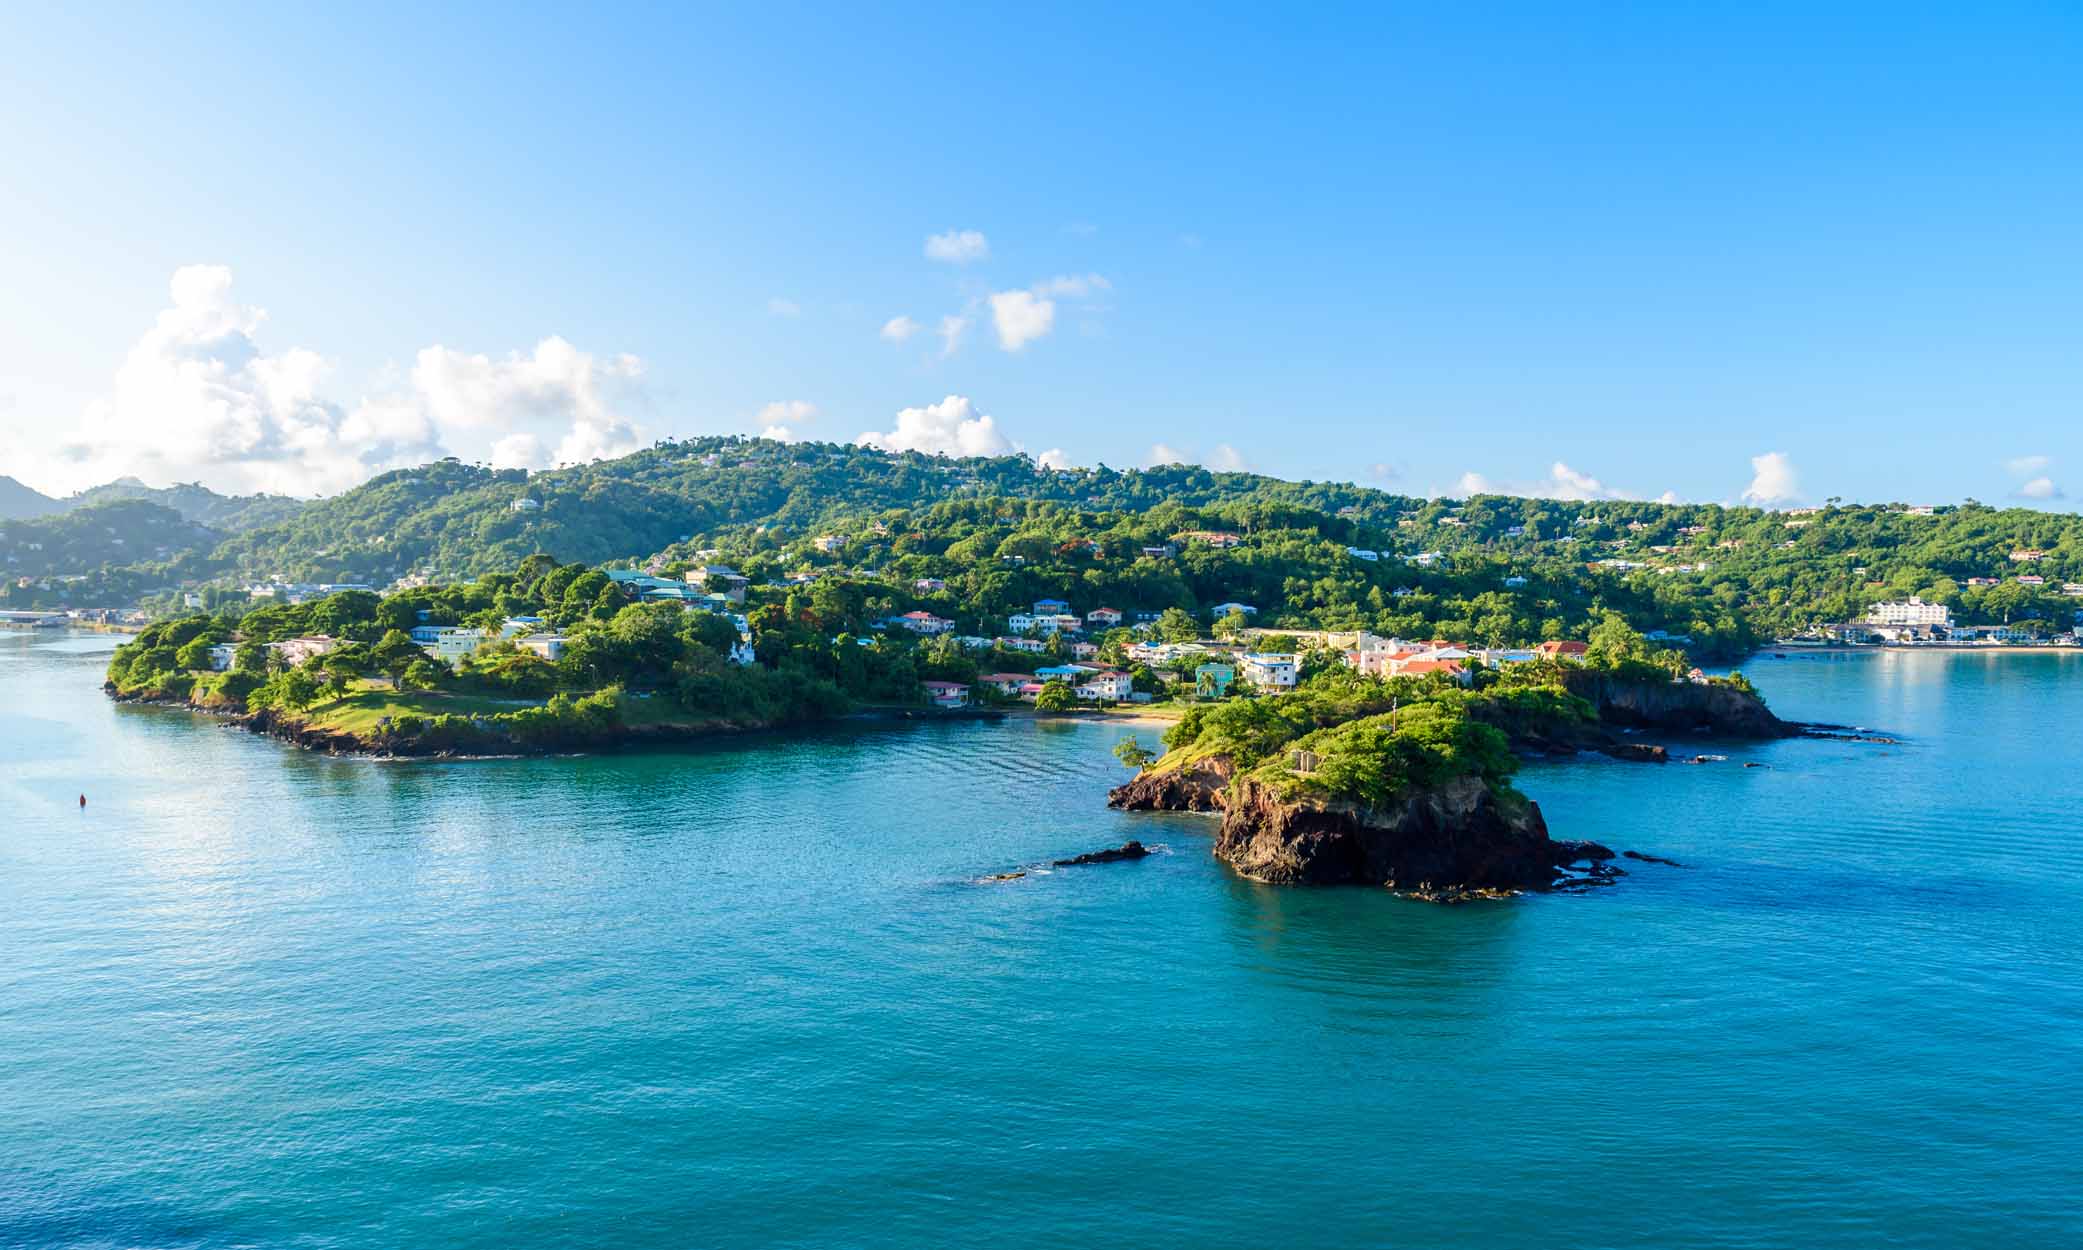 Quyền công dân thông qua đầu tư ở St Lucia đang thay đổi.